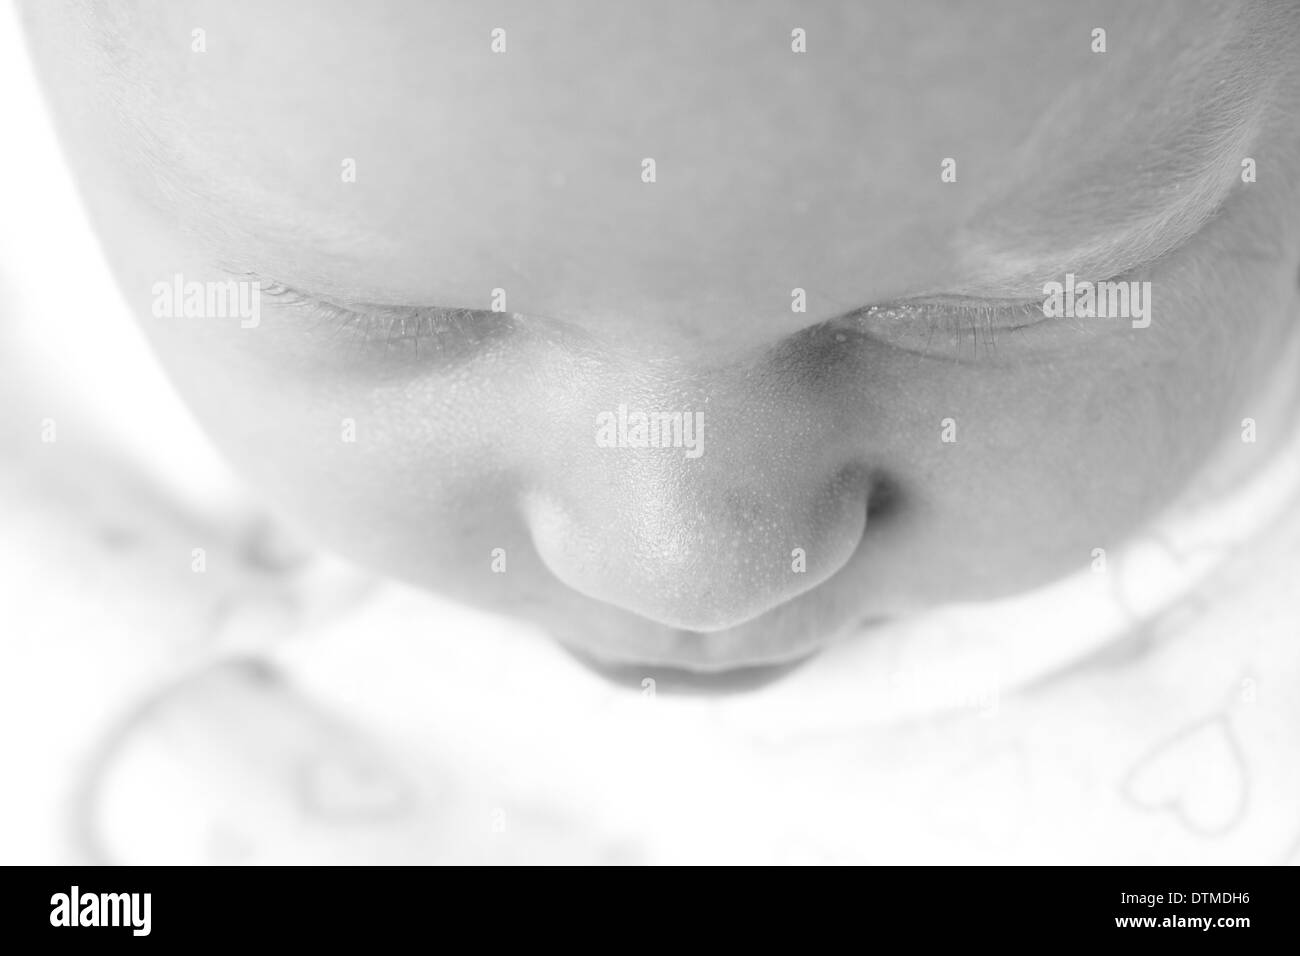 Image visage de bébés nouveau-né sommeil mignon Banque D'Images